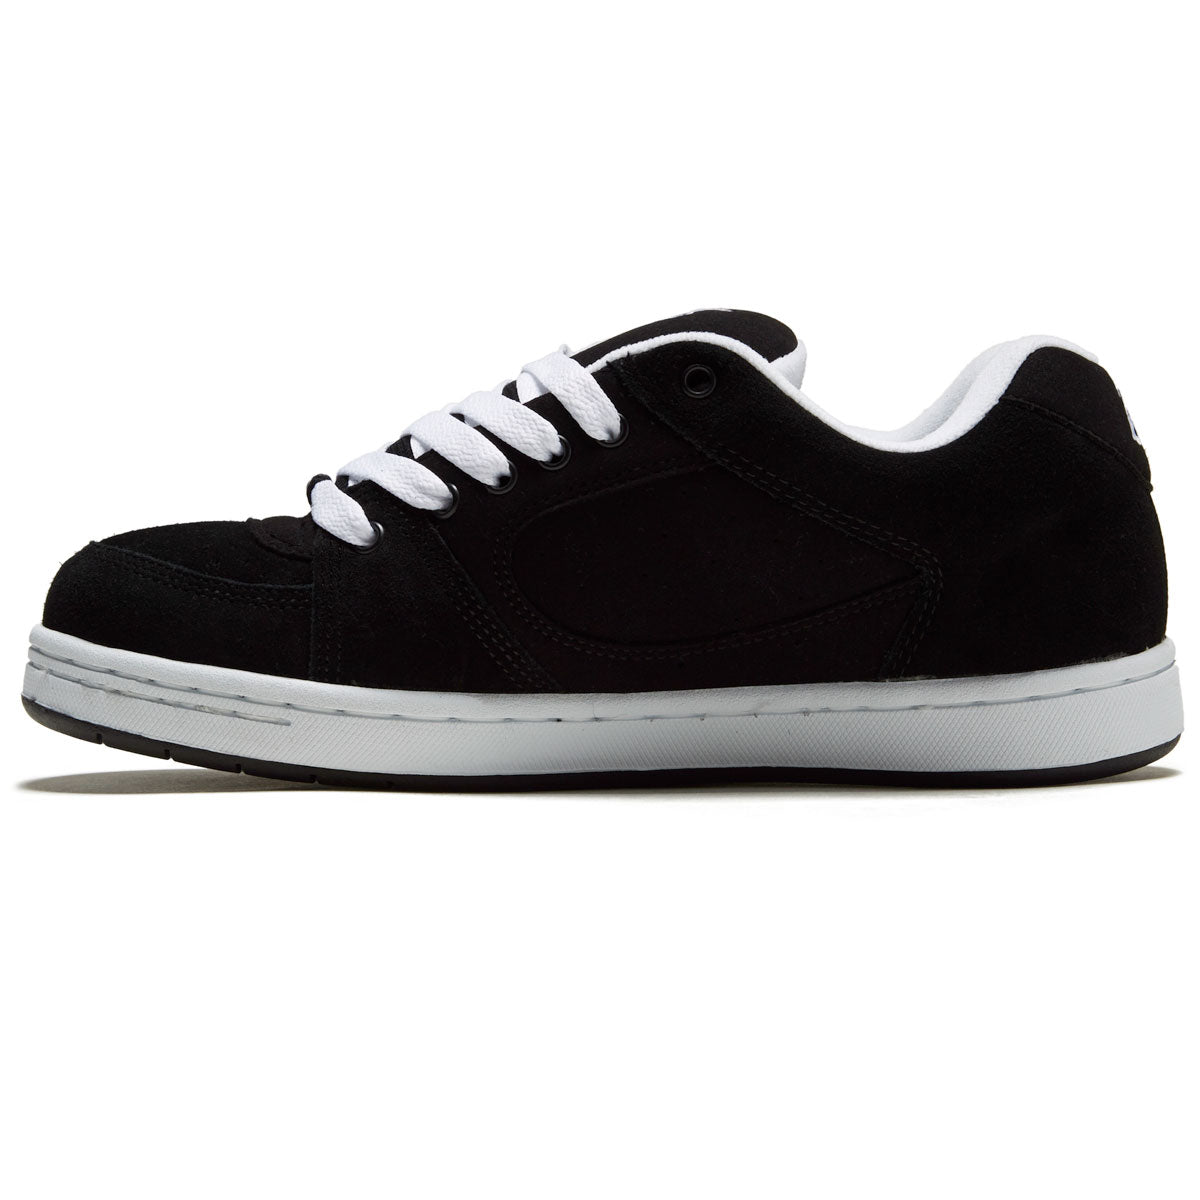 eS Accel Og Shoes - Black/White/Black image 2